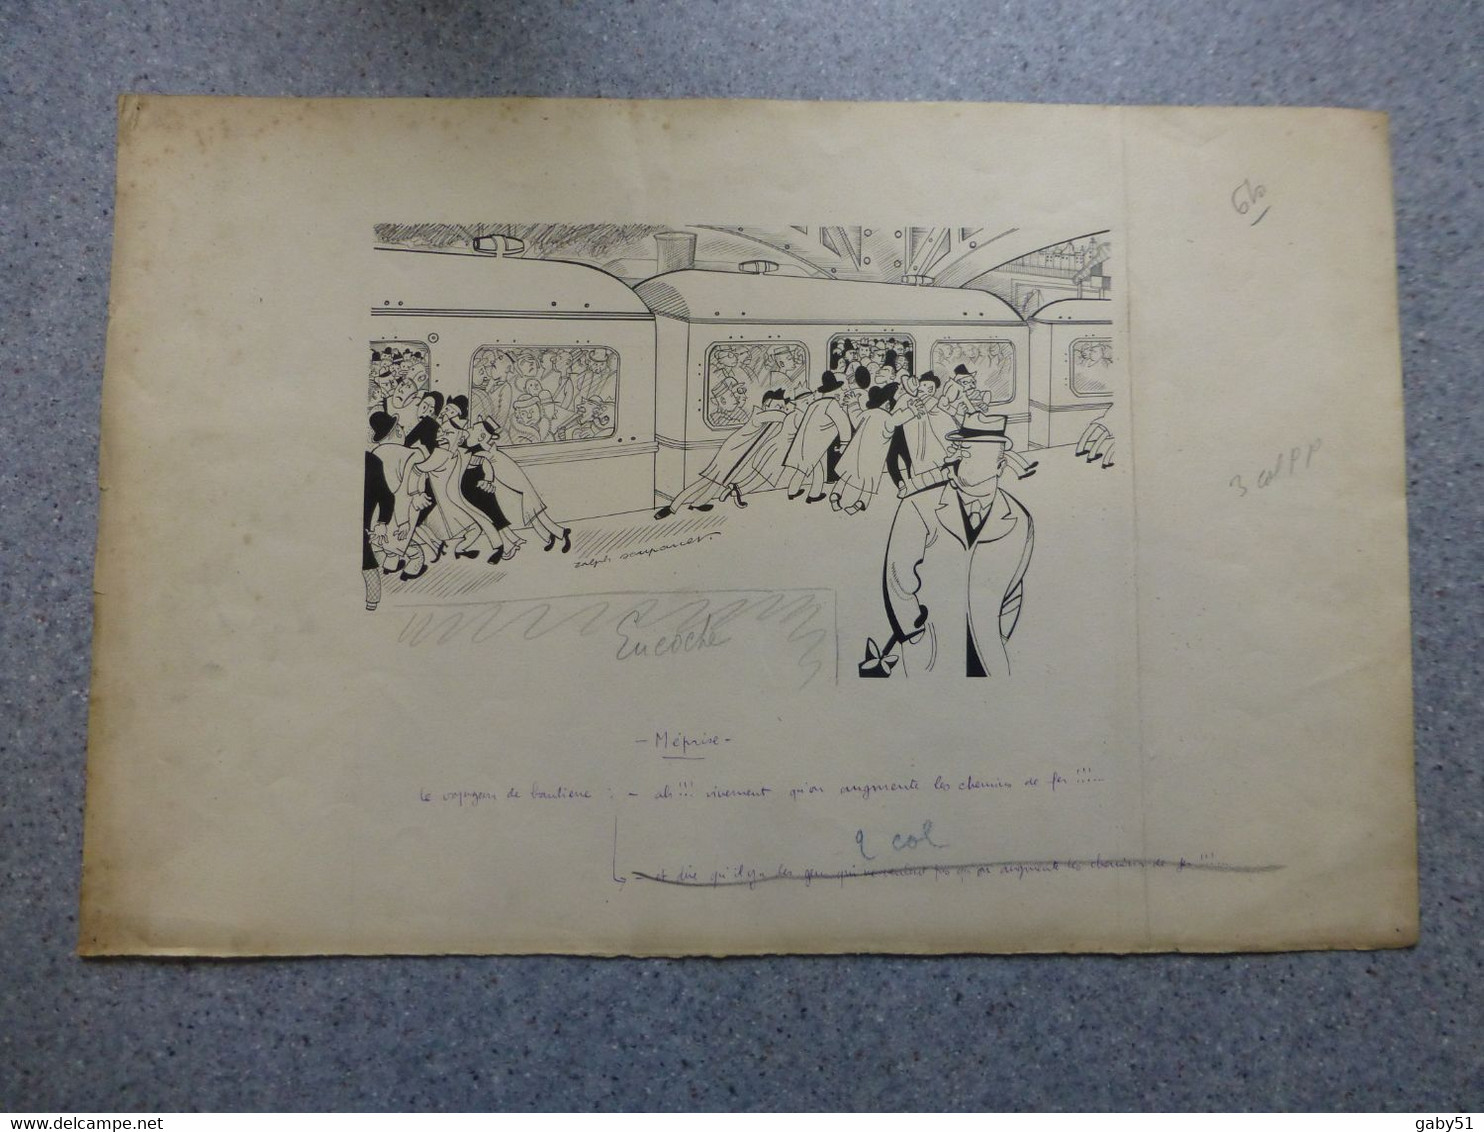 Dans Le Métro, Méprise, Dessin Original De Ralph Soupault, Signé, Vers 1925, Encre De Chine, UNIQUE ; G 04 - Drawings